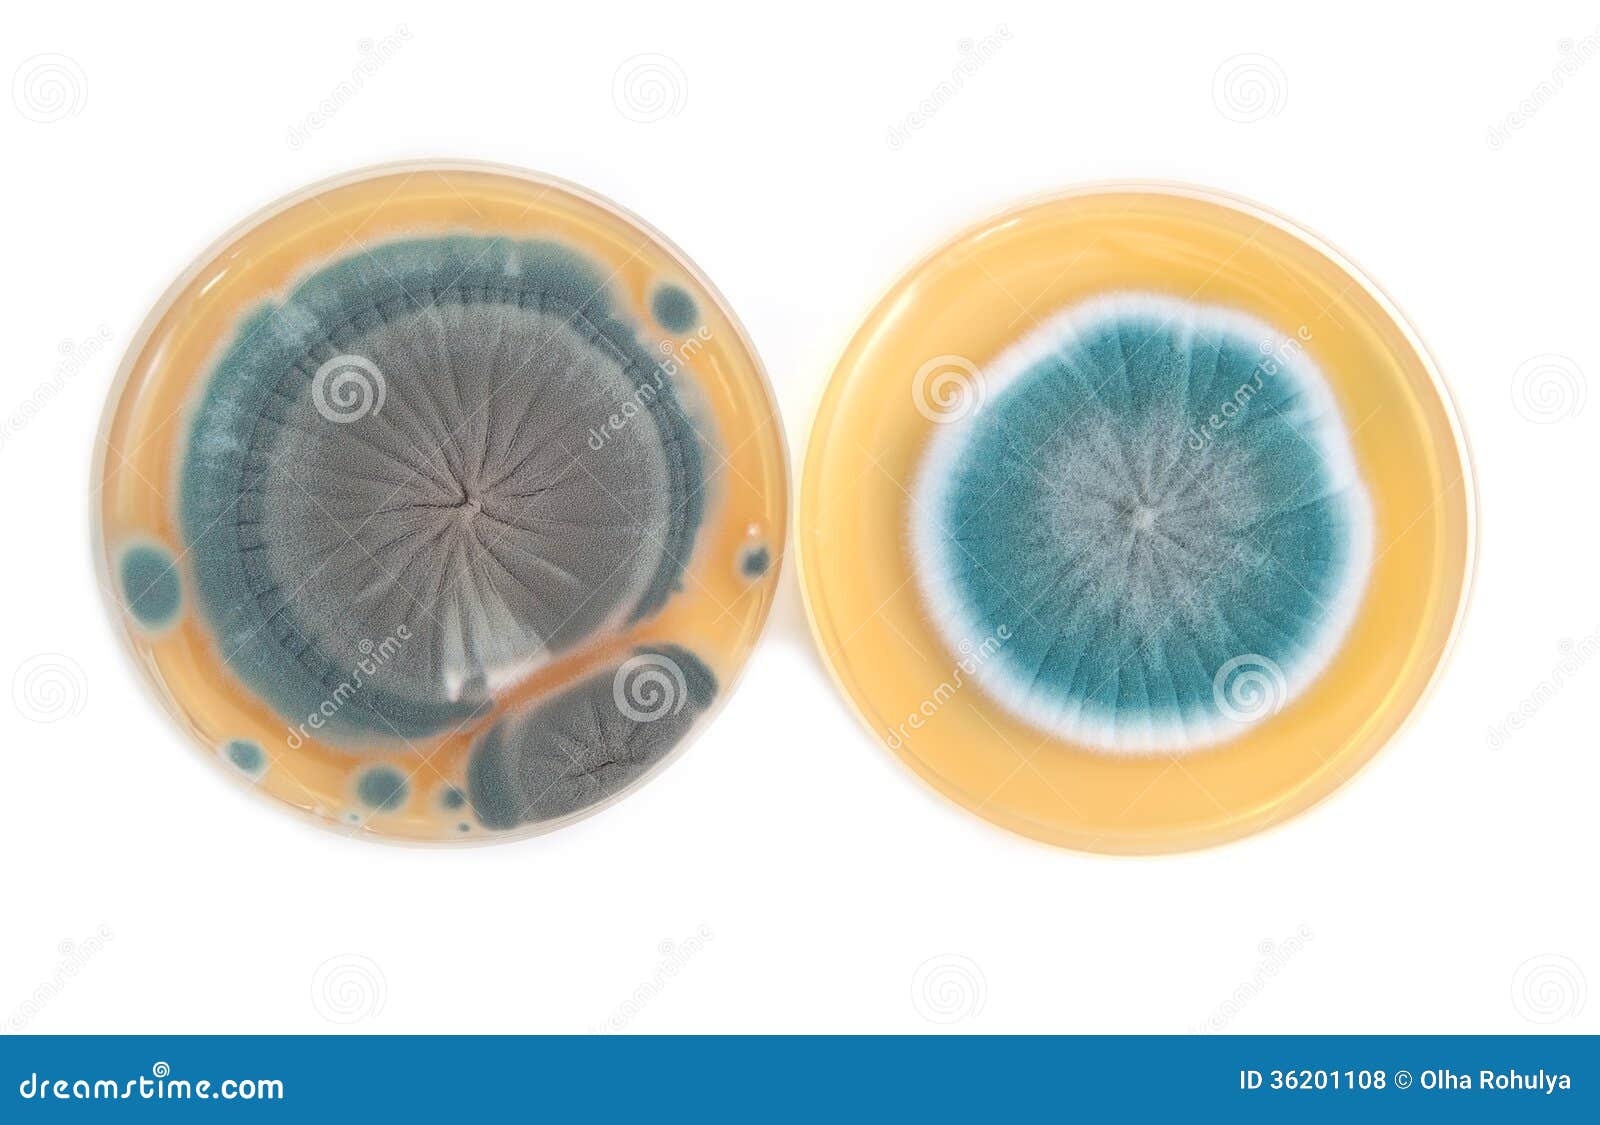 penicillium fungi on agar plate